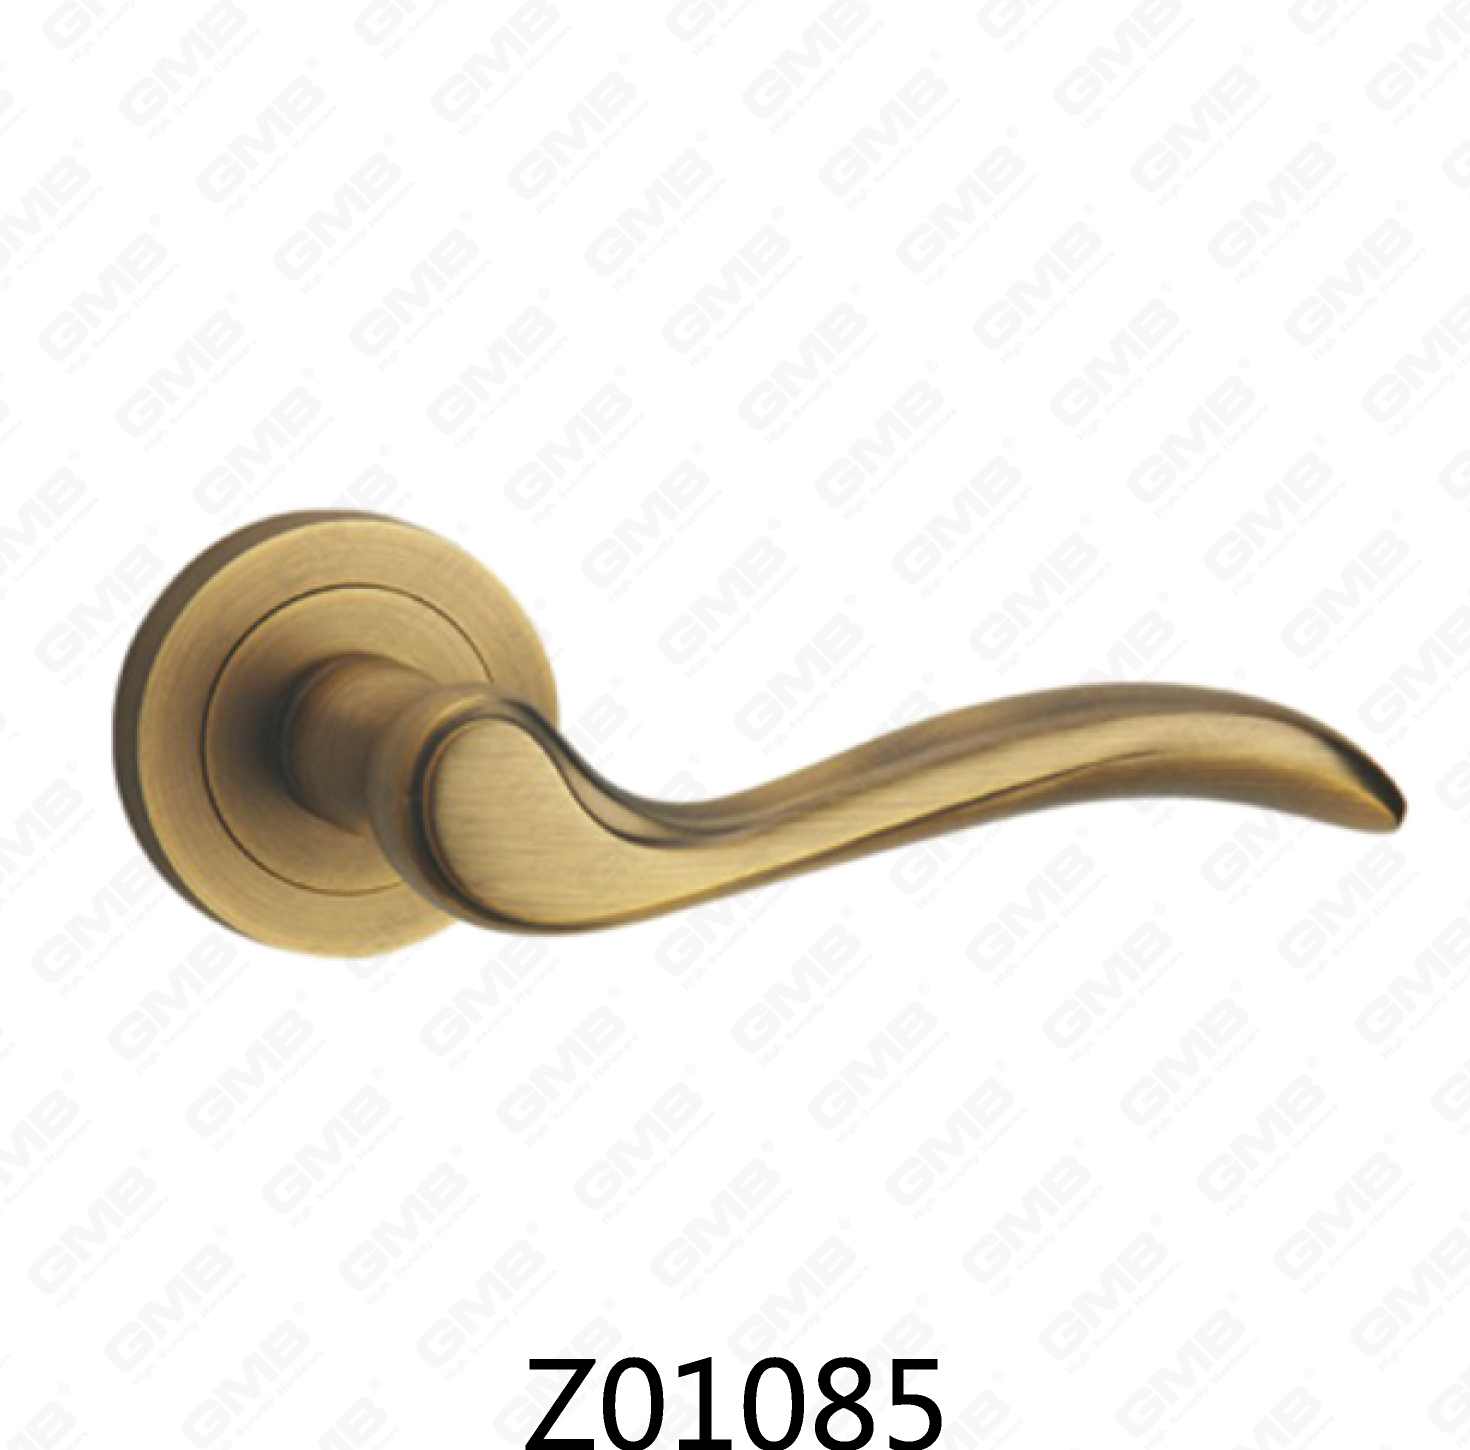 ידית דלת רוזטת אלומיניום מסגסוגת אבץ של Zamak עם רוזטה עגולה (Z01085)